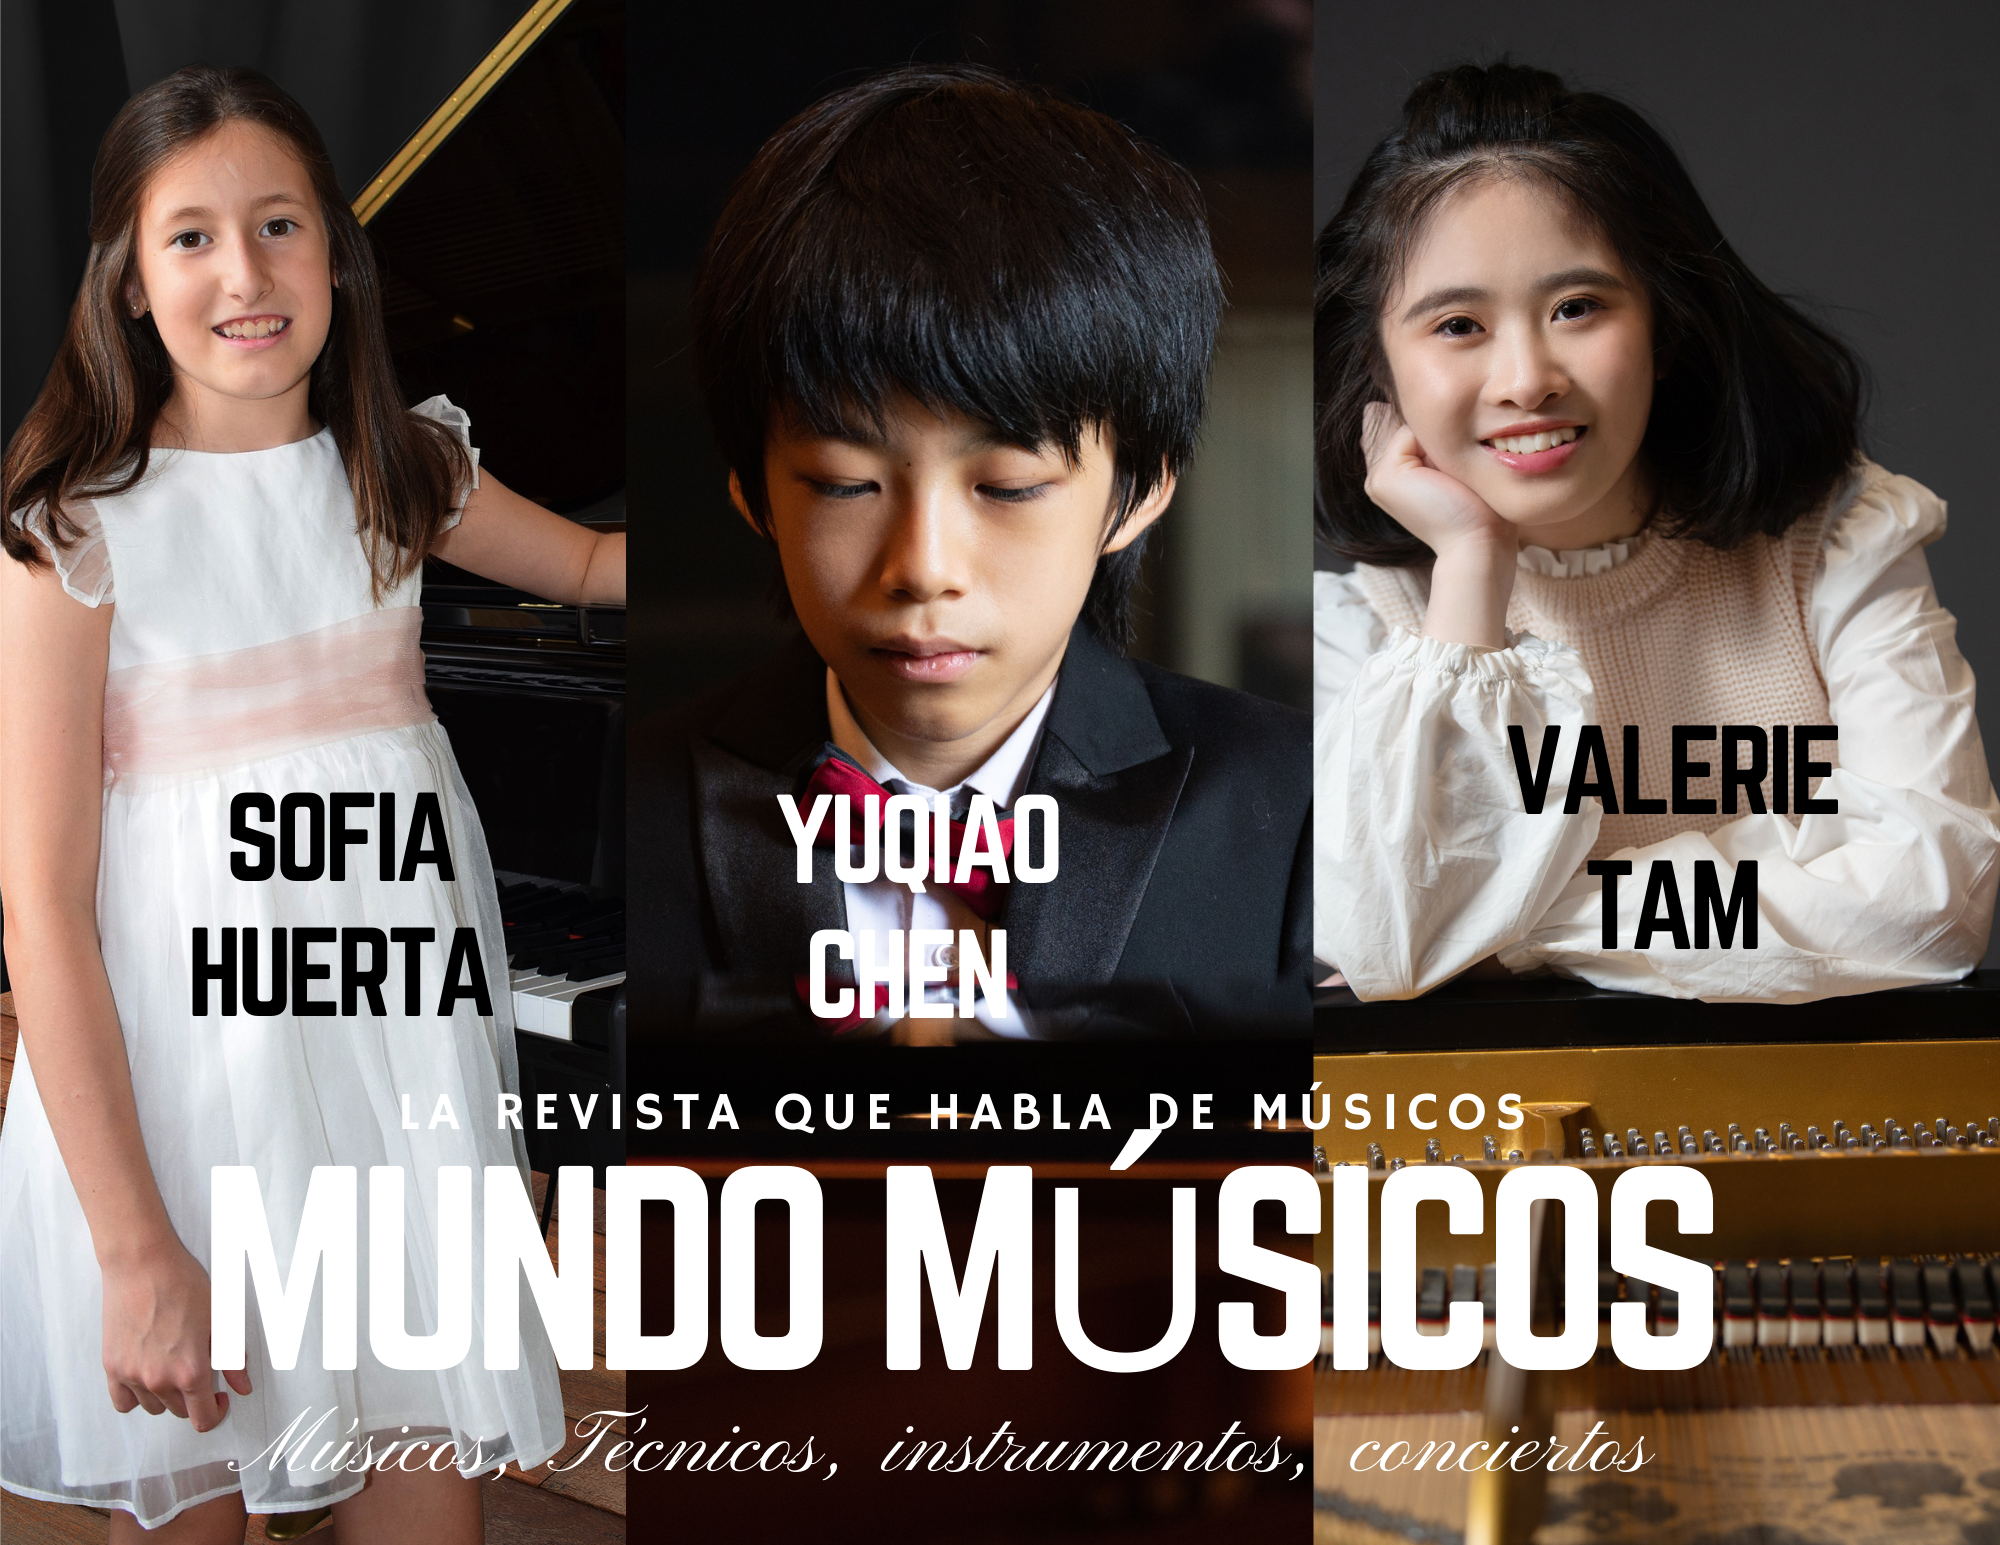 Entrevistamos a Sofia Huerta,Valerie Tam y Yuqiao Chen jóvenes talentos musicales, Jóvenes intérpretes ganadores de WPTA SPAIN 2022